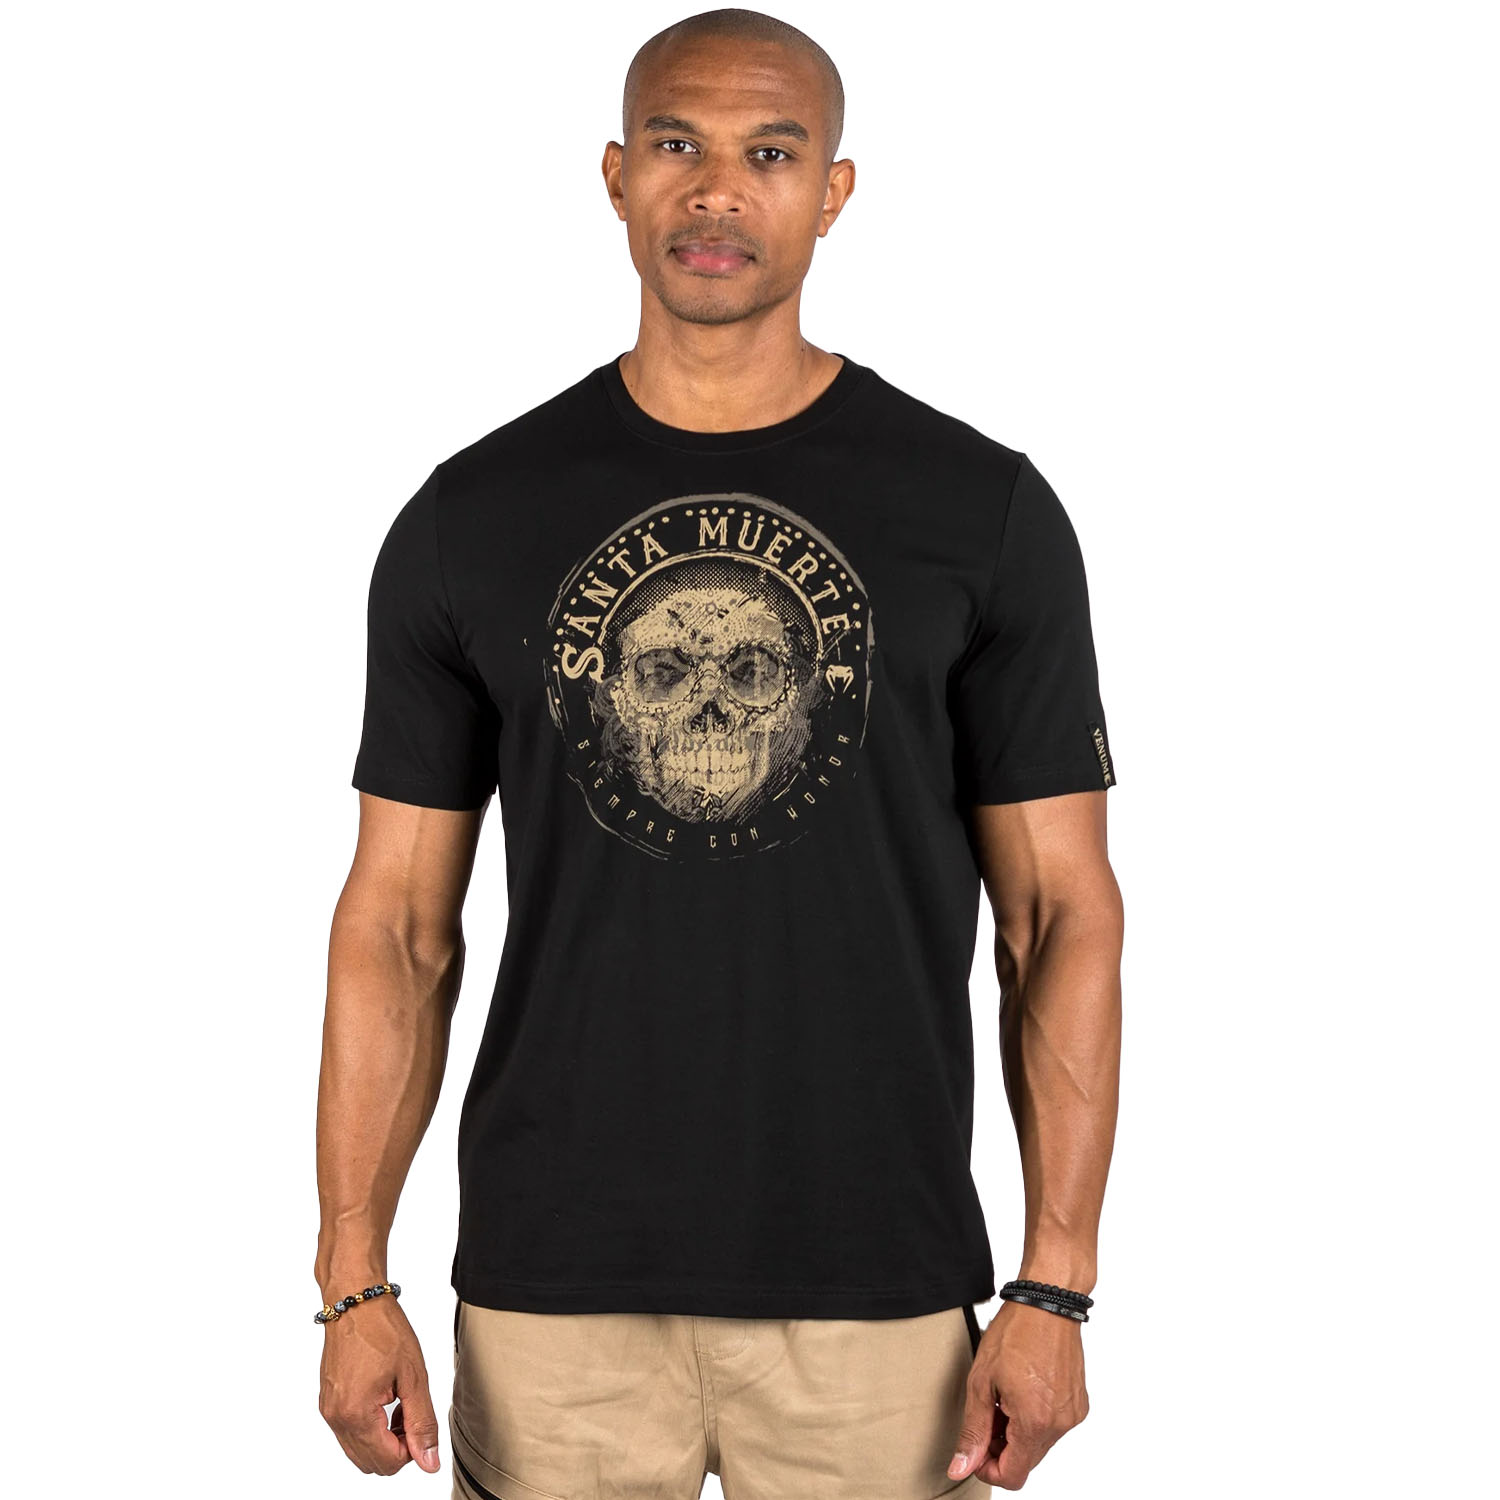 VENUM T-Shirt, Santa Muerte, Dark Side, black-brown, S